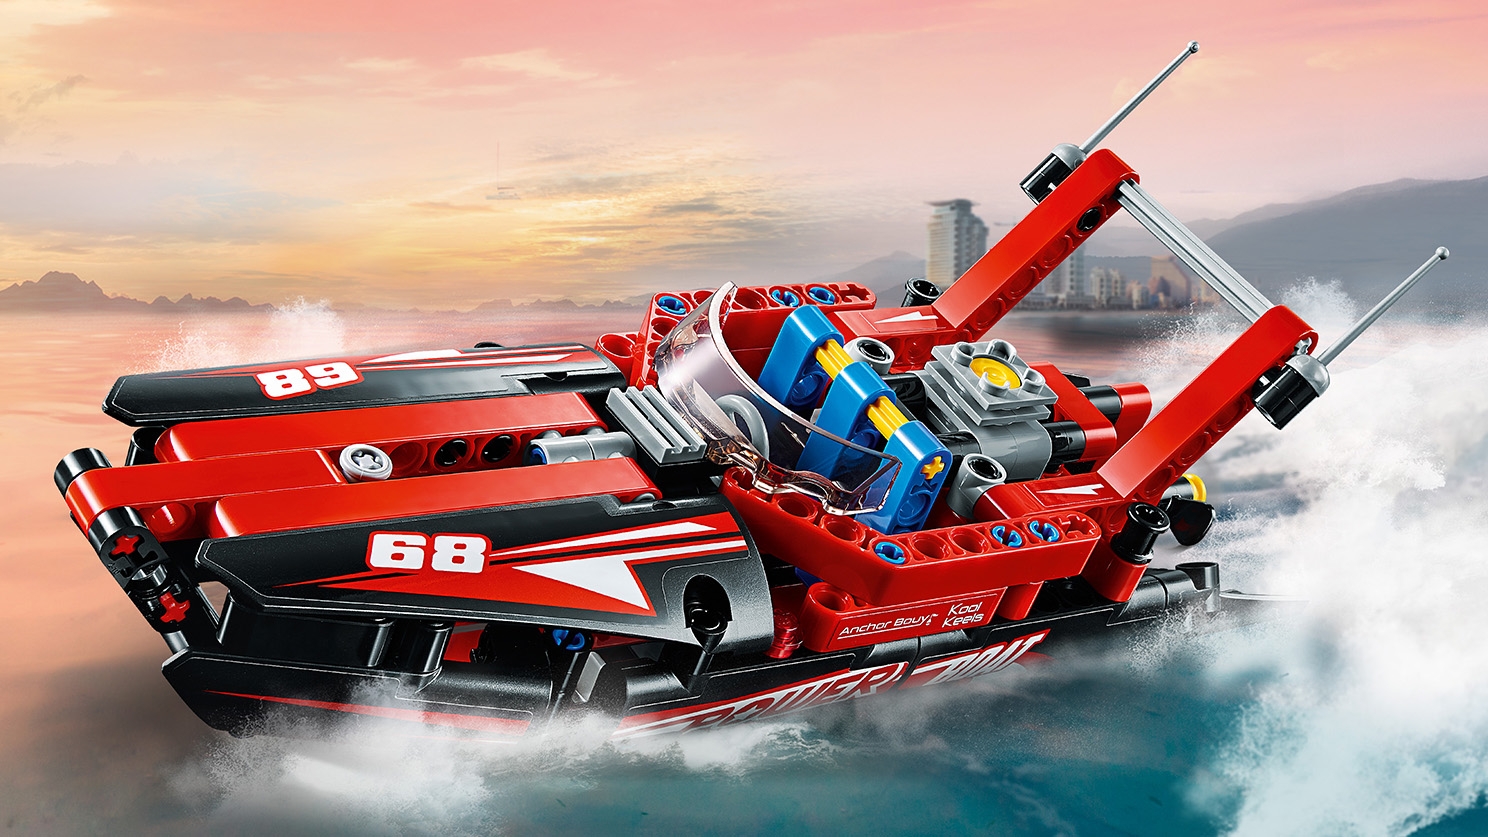 udvide Barcelona dyb Power Boat 42089 - LEGO® Technic Sets - LEGO.com for kids